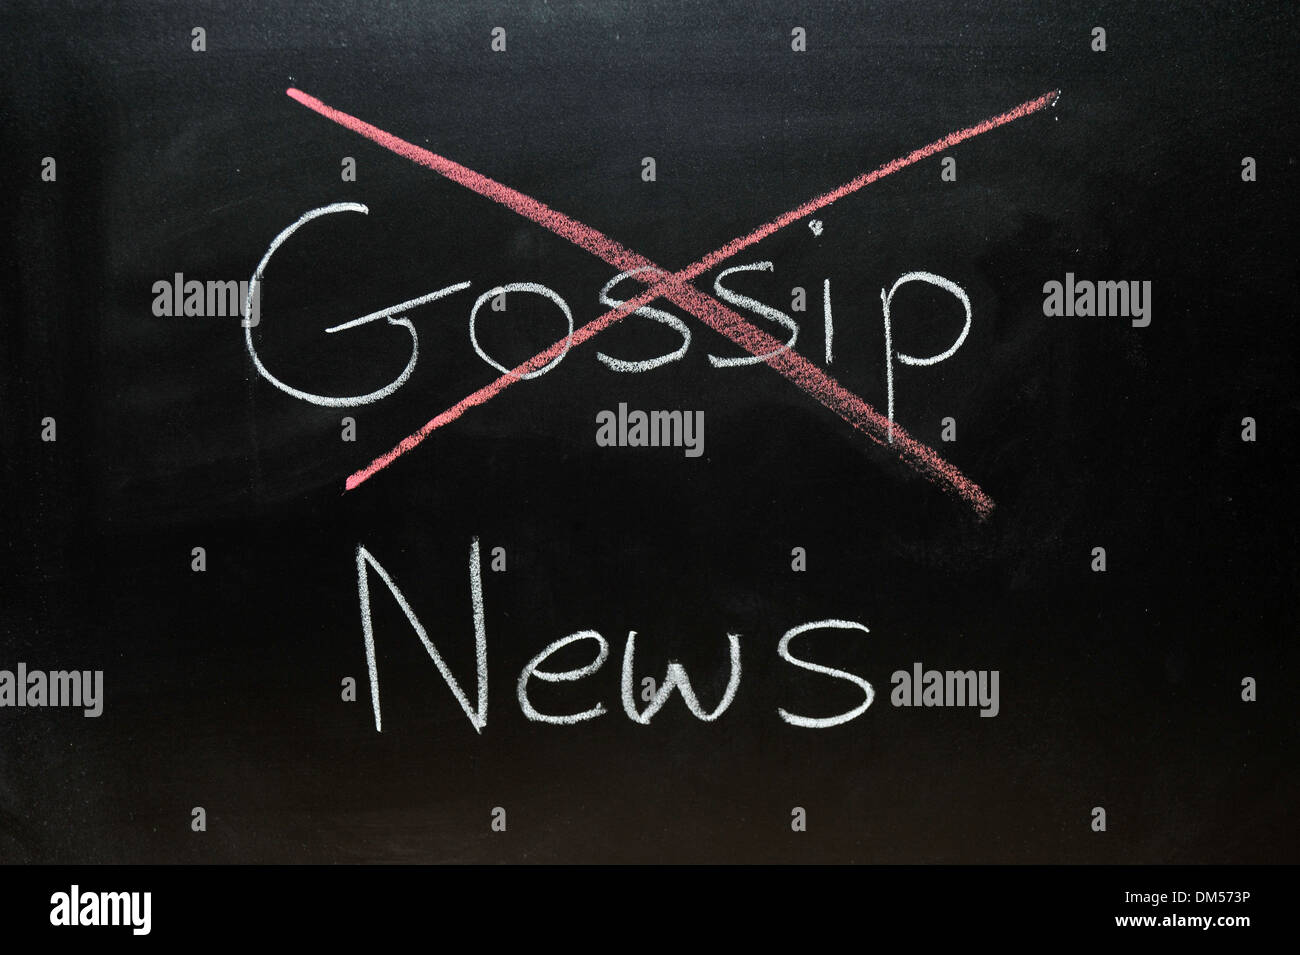 Gossip News dessiné sur un tableau noir à craie avec gossip barré. Banque D'Images